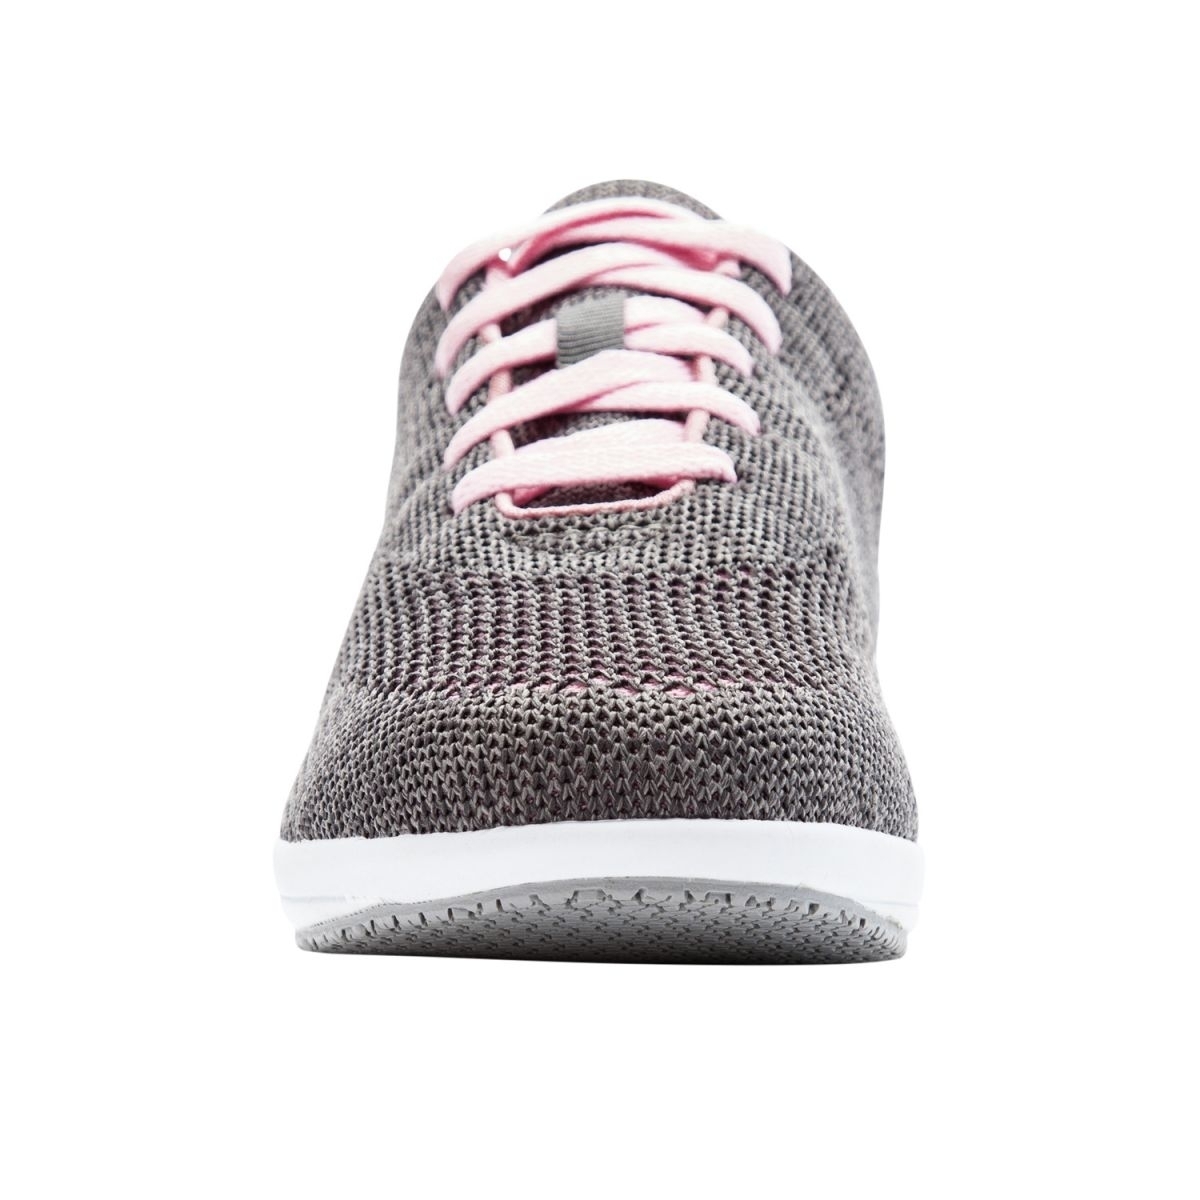 Propet Women's Washable Walker Evolution Sneaker Grey/Pink - WCS012MGPI GREY/PINK - GREY/PINK, 9-2E